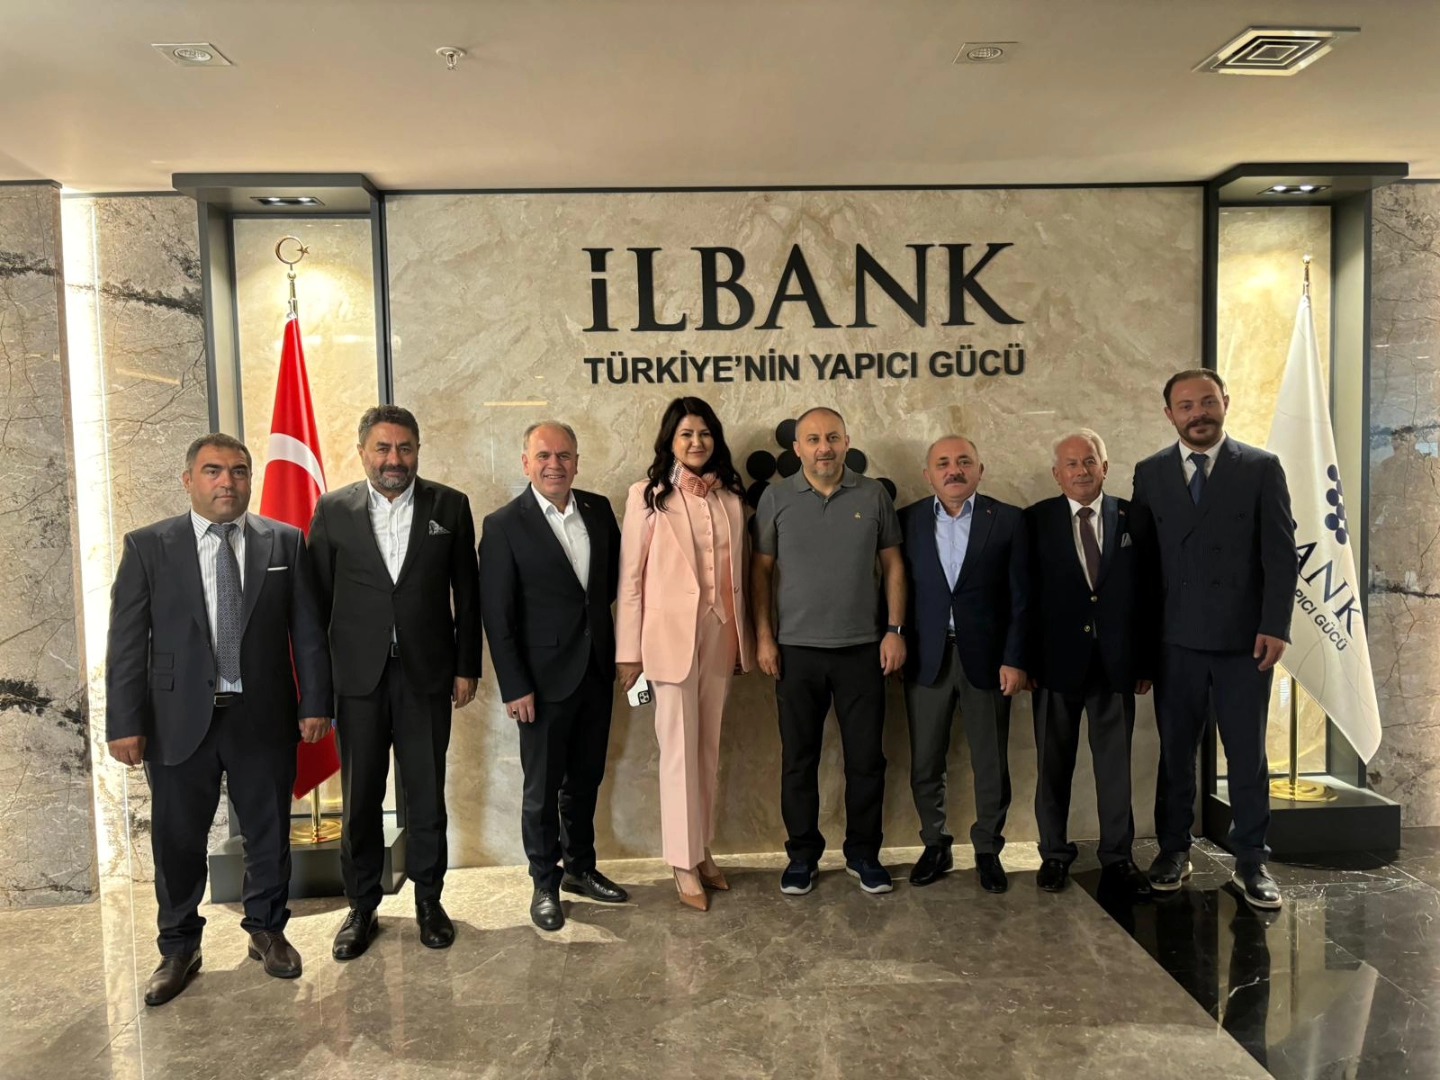 Çankırı'nın MHP'li Belediye Başkanları Bakan Turunda